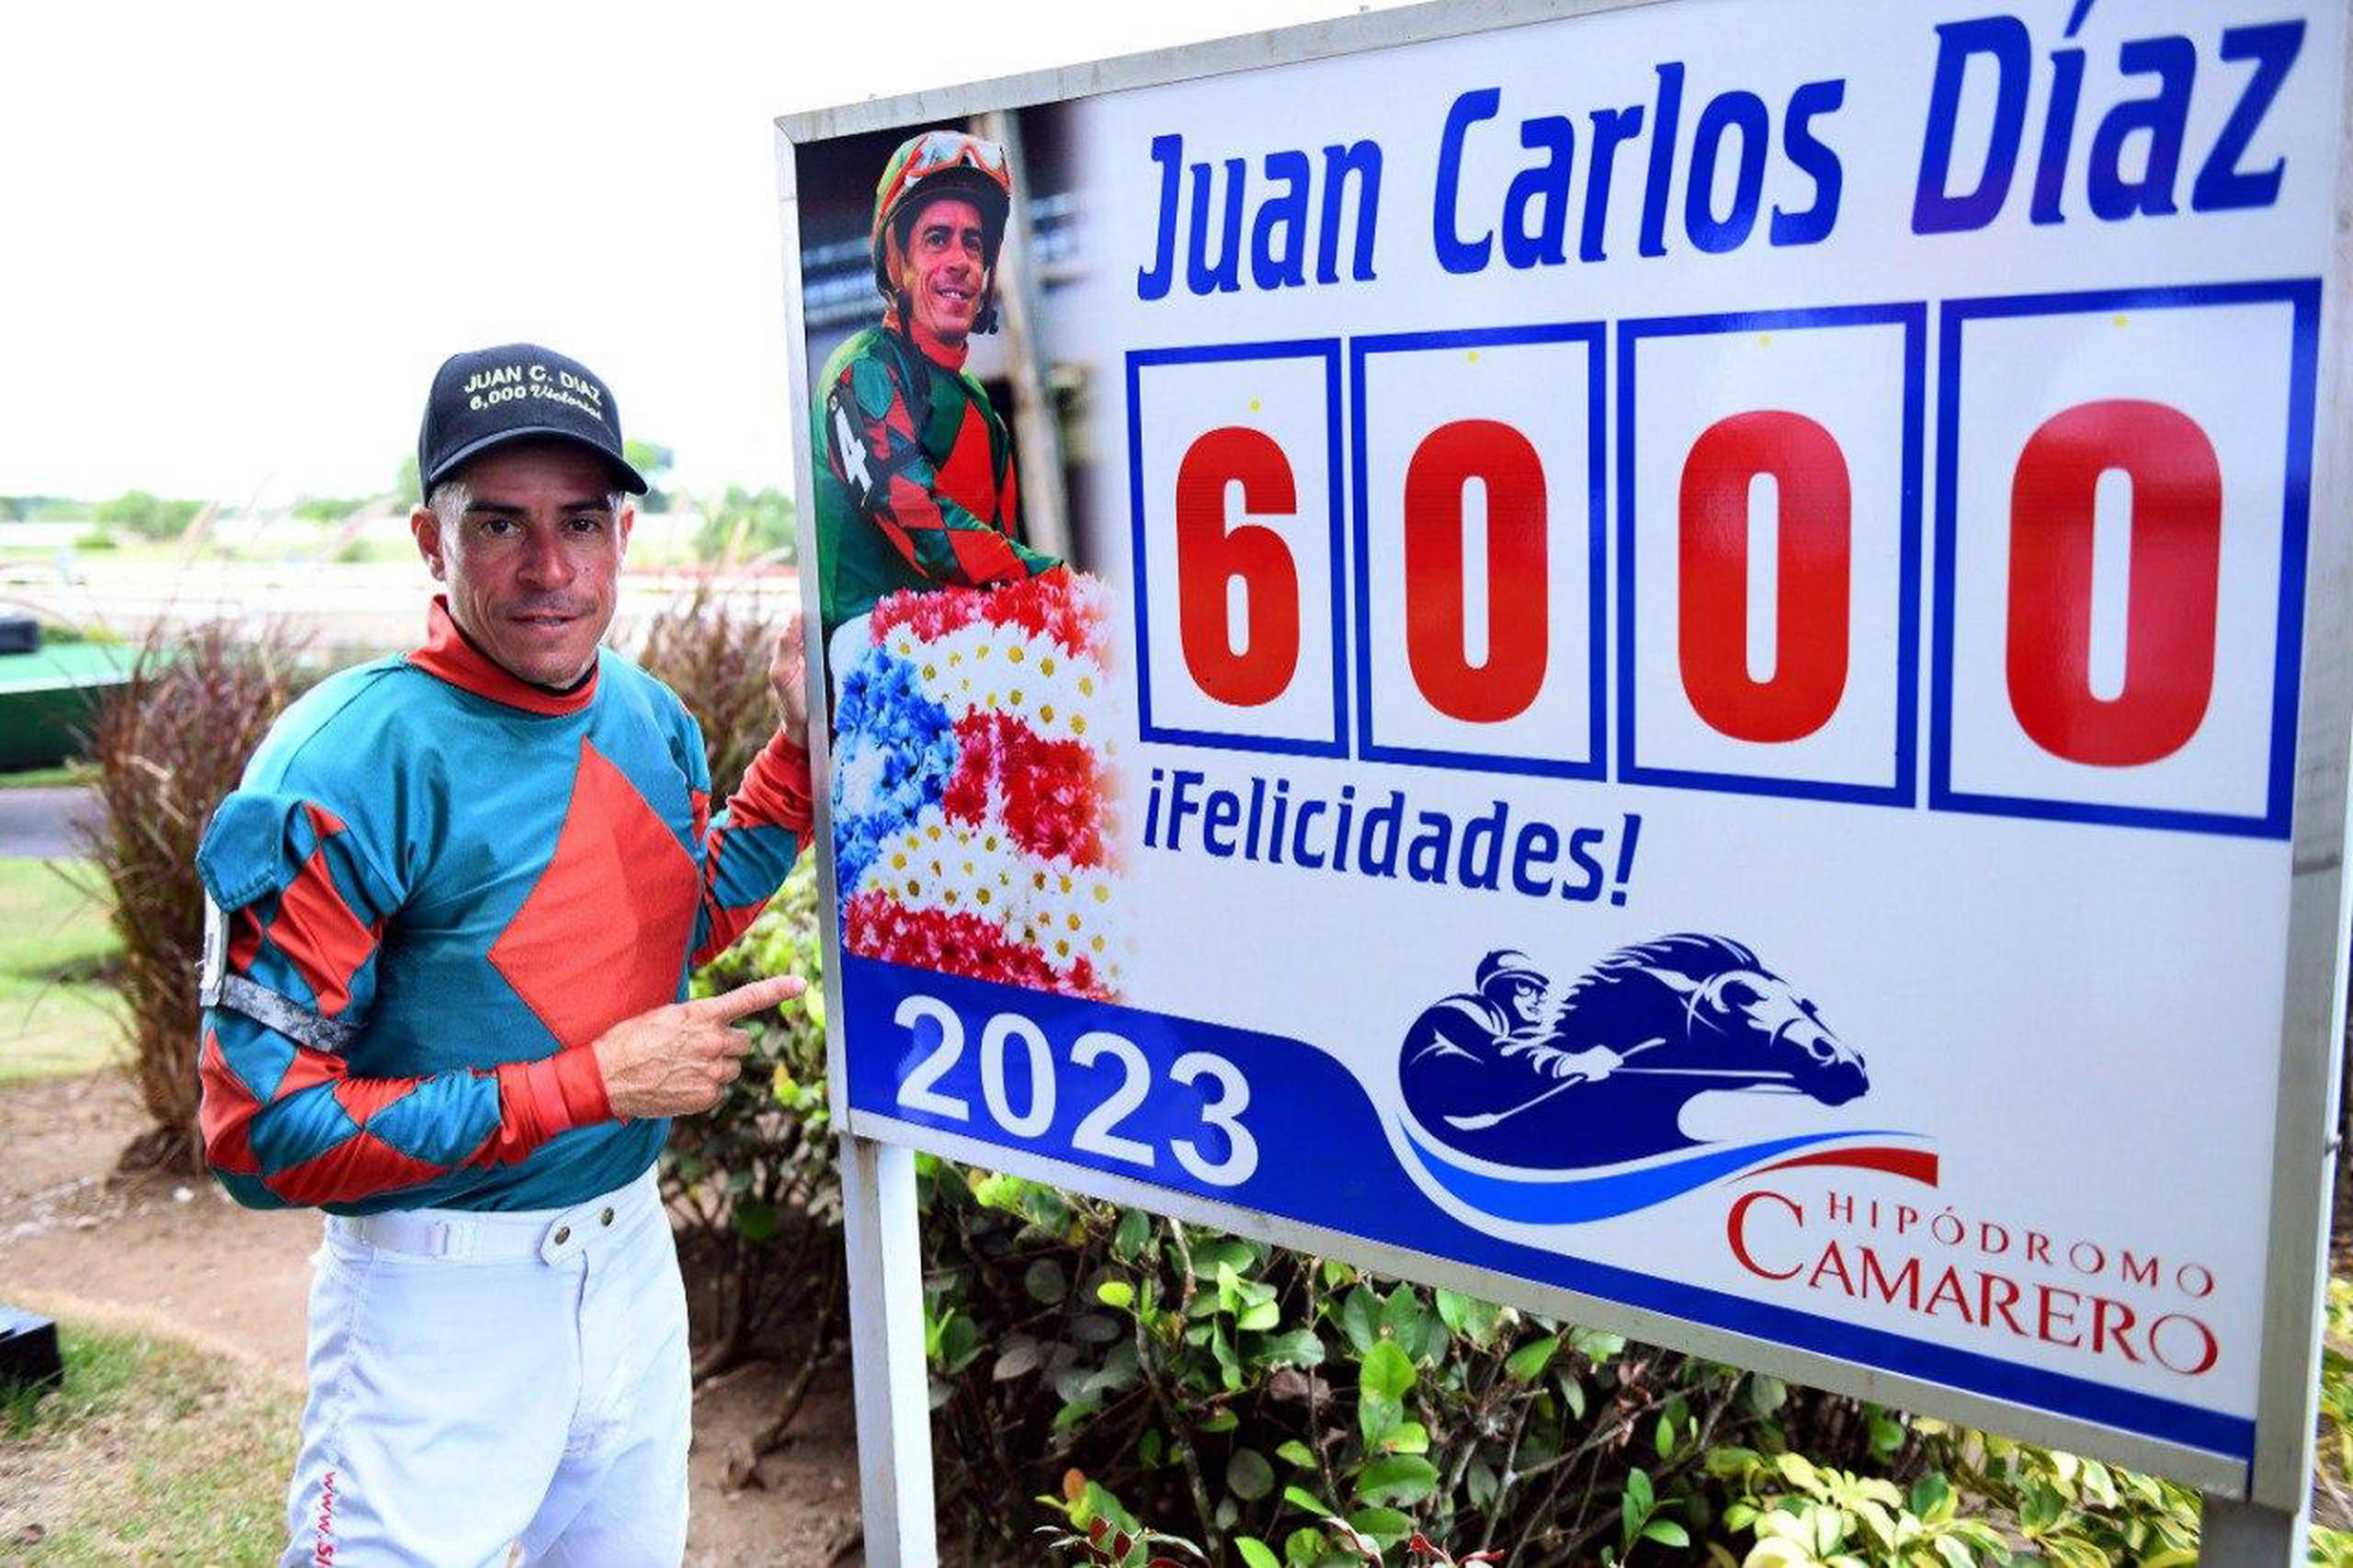 Juan Carlos Díaz posa junto a una pancarta que le certifica como ganador de 6,000 carreras.  (Camarero)